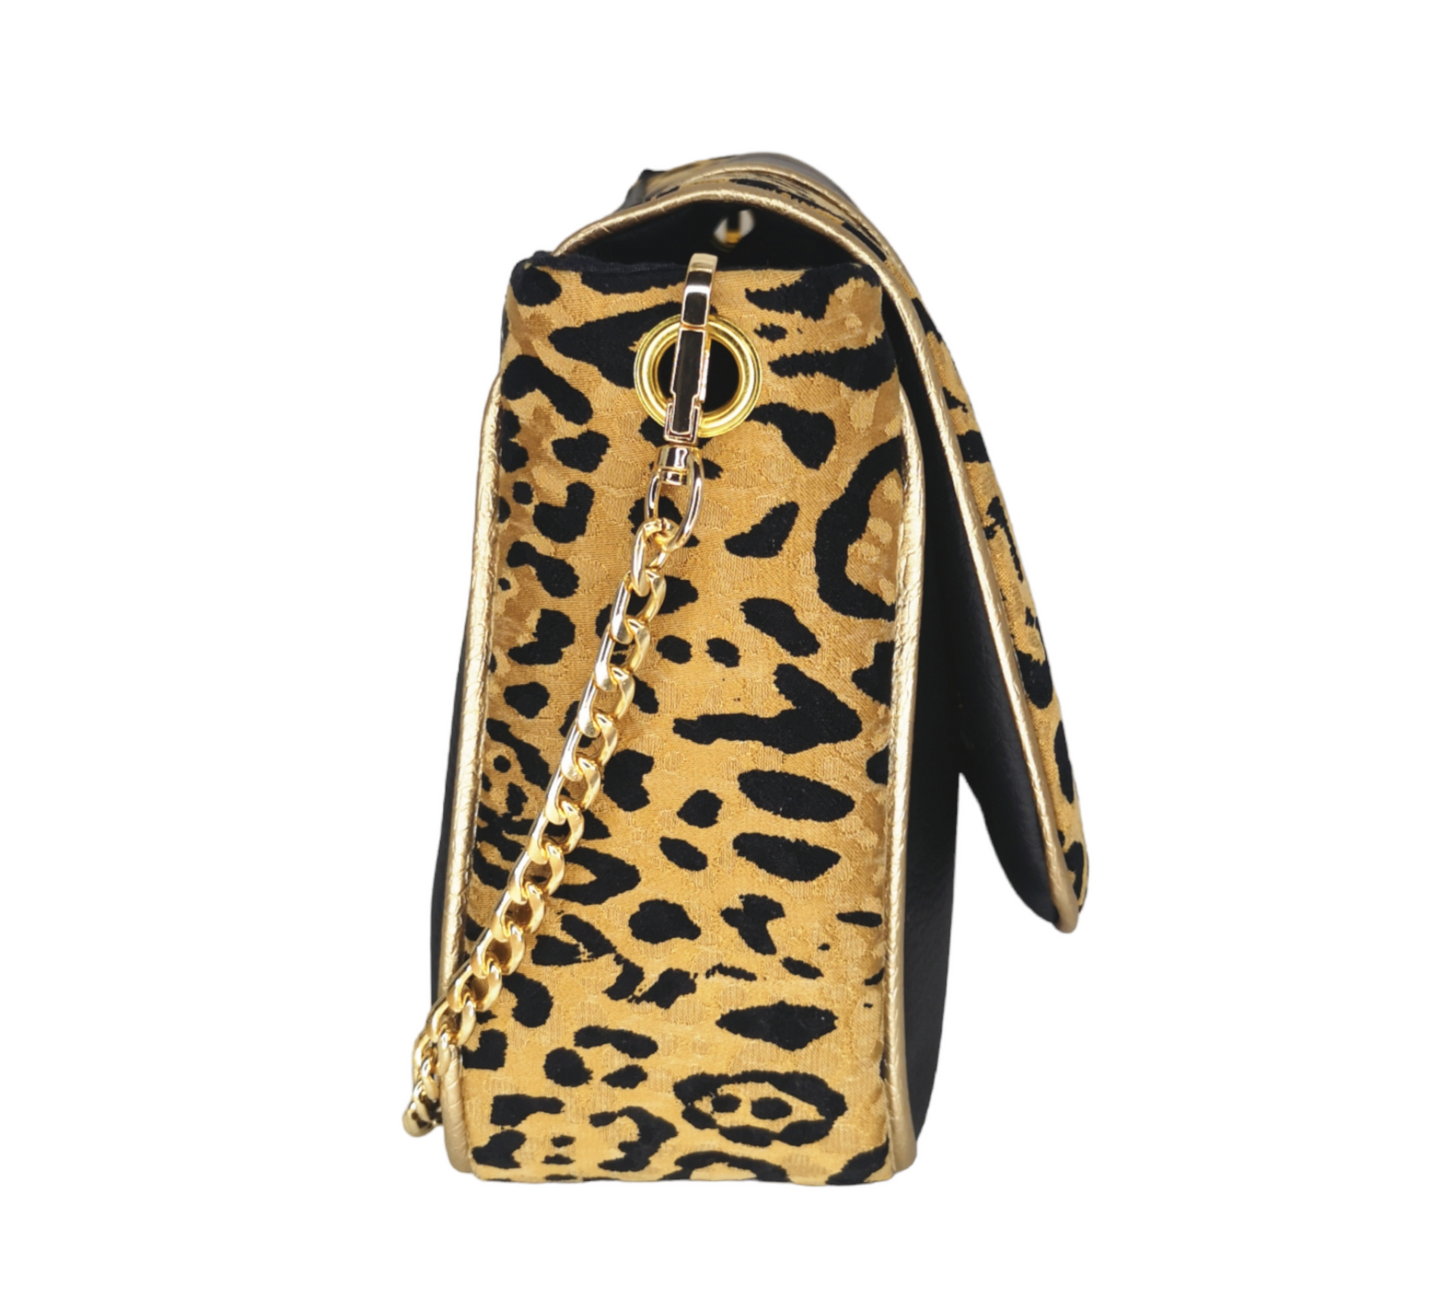 Sac à rabat motif léopard, camel et noir, décoré d'œillets en métal doré.   Muni d'un fermoir tourniquet doré et d'une chaîne doré bandouilère amovible.